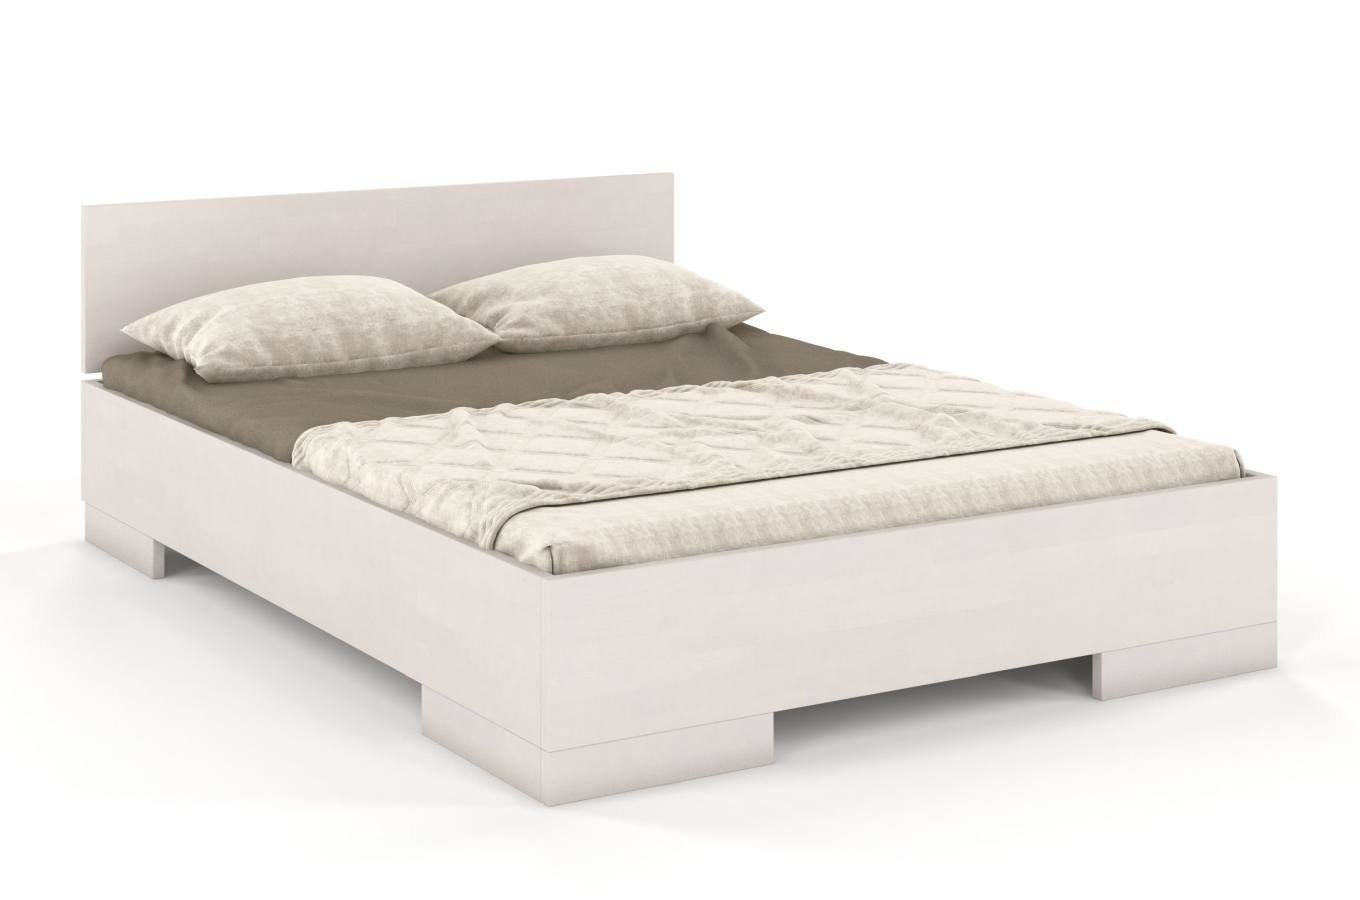 Łóżko drewniane bukowe Skandica SPECTRUM Maxi&Long / 140x220 cm, kolor biały